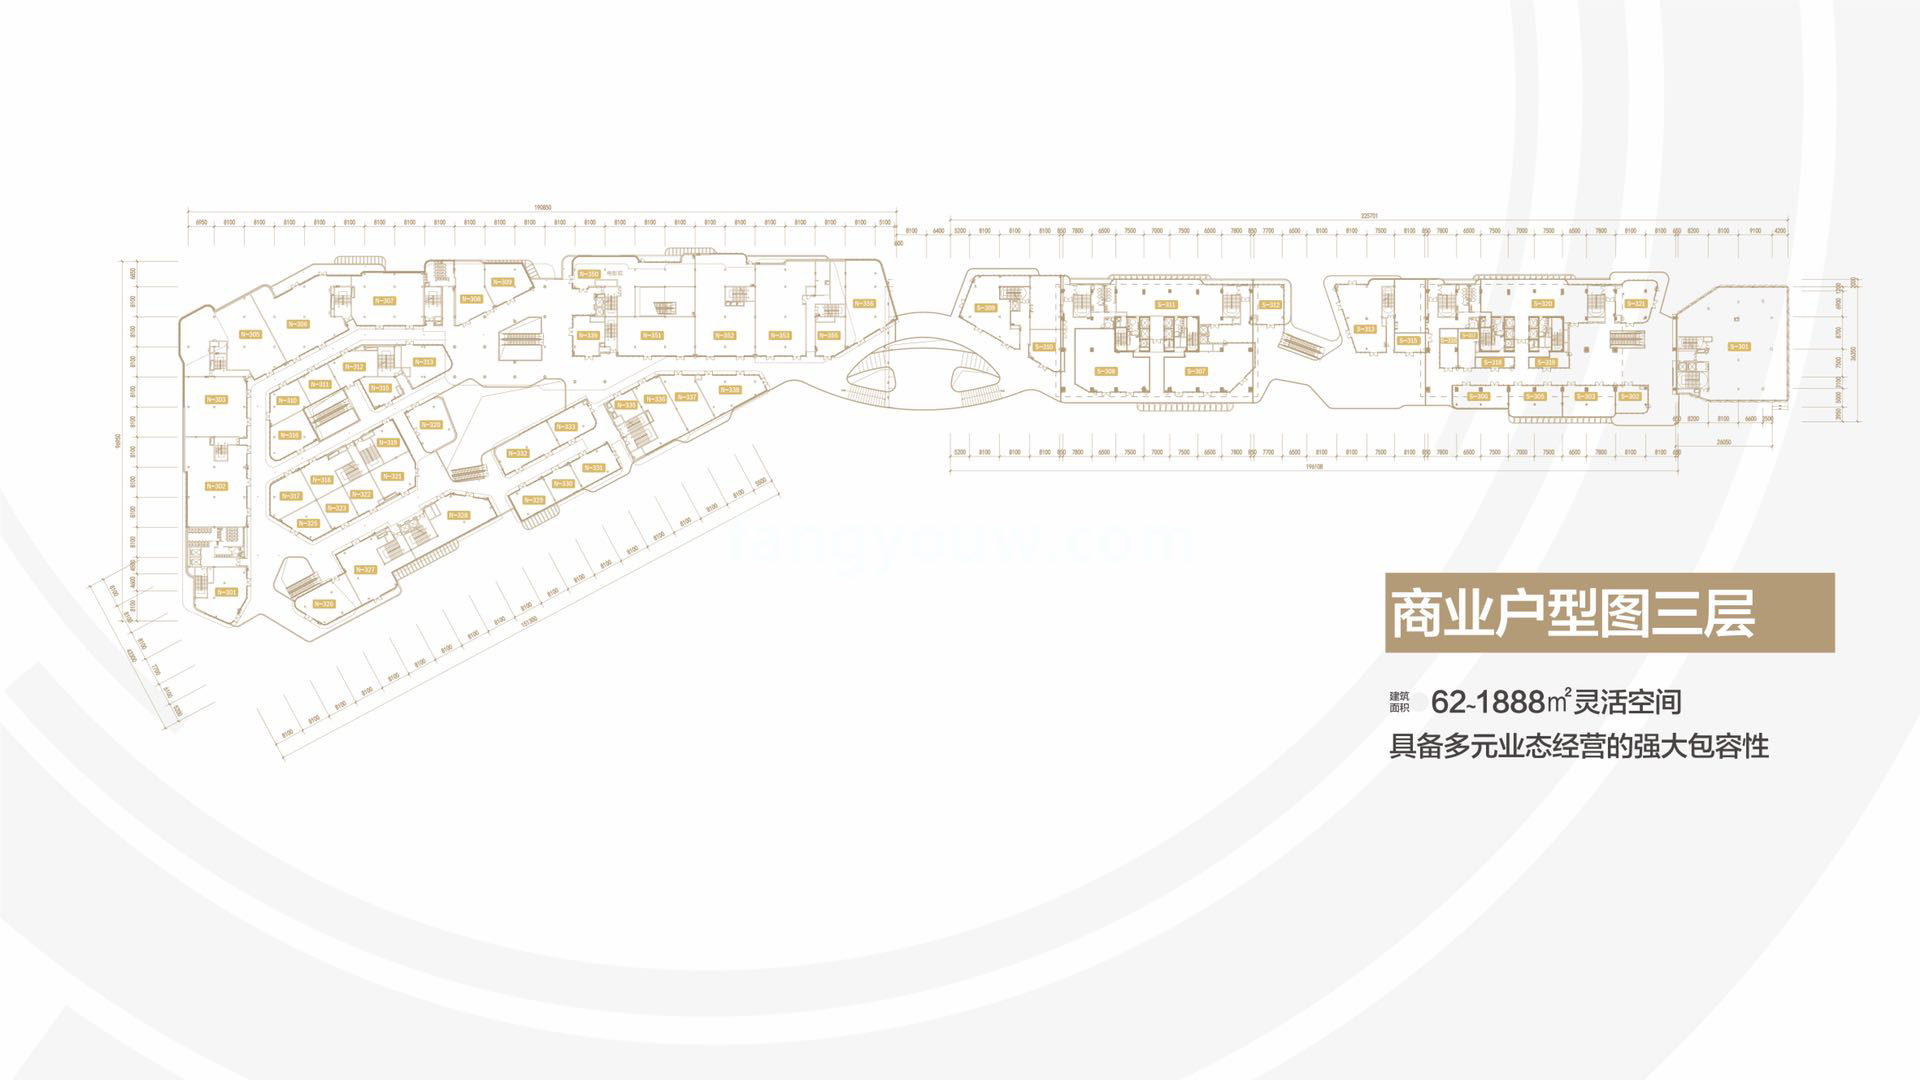 雅居乐中心 独立商业 三层平面图 建面62-1888㎡